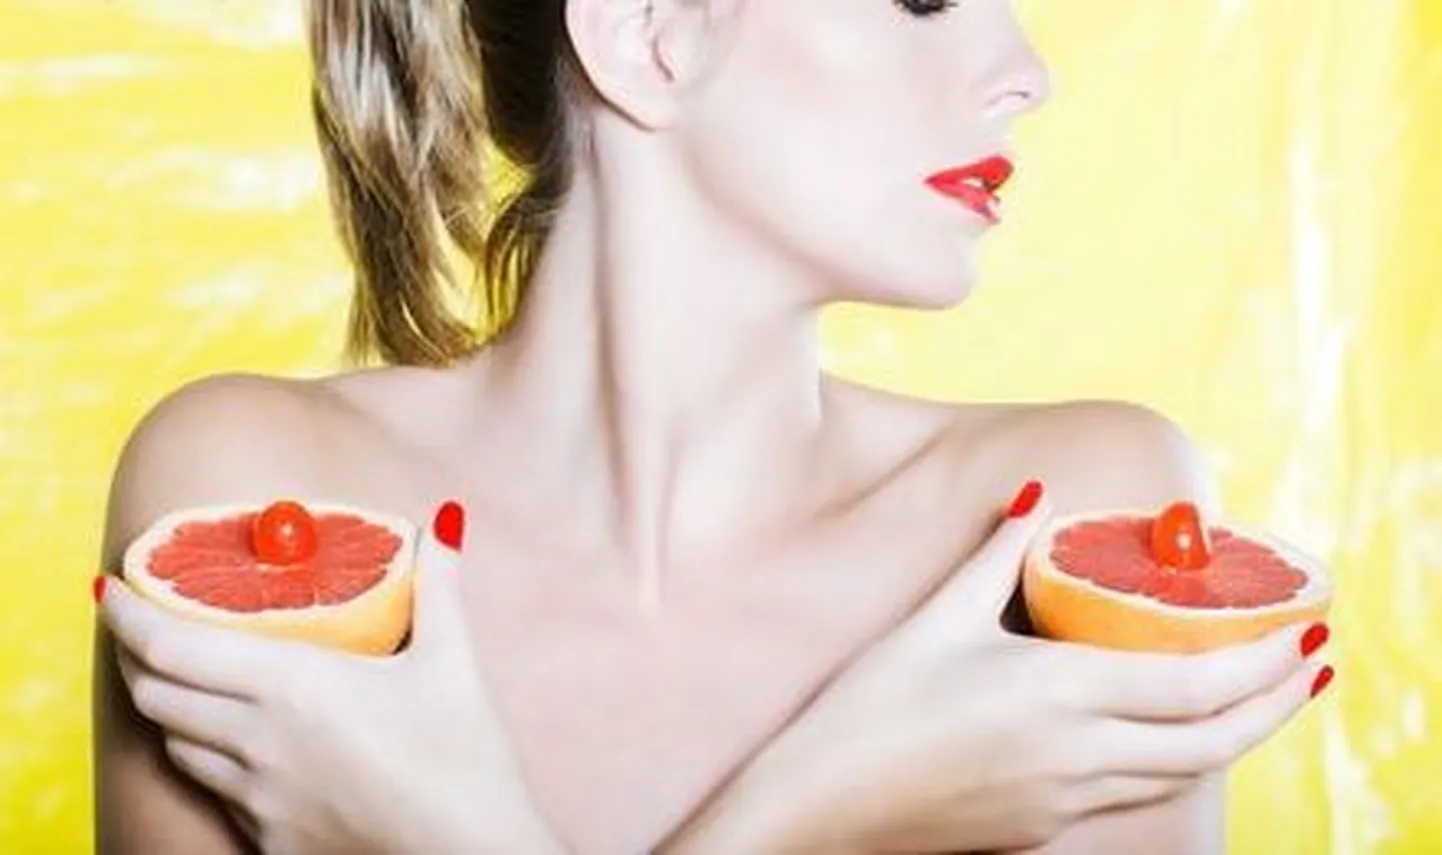 Грейпфрут повышает эффективность лекарств против рака. Иллюстративное фото.